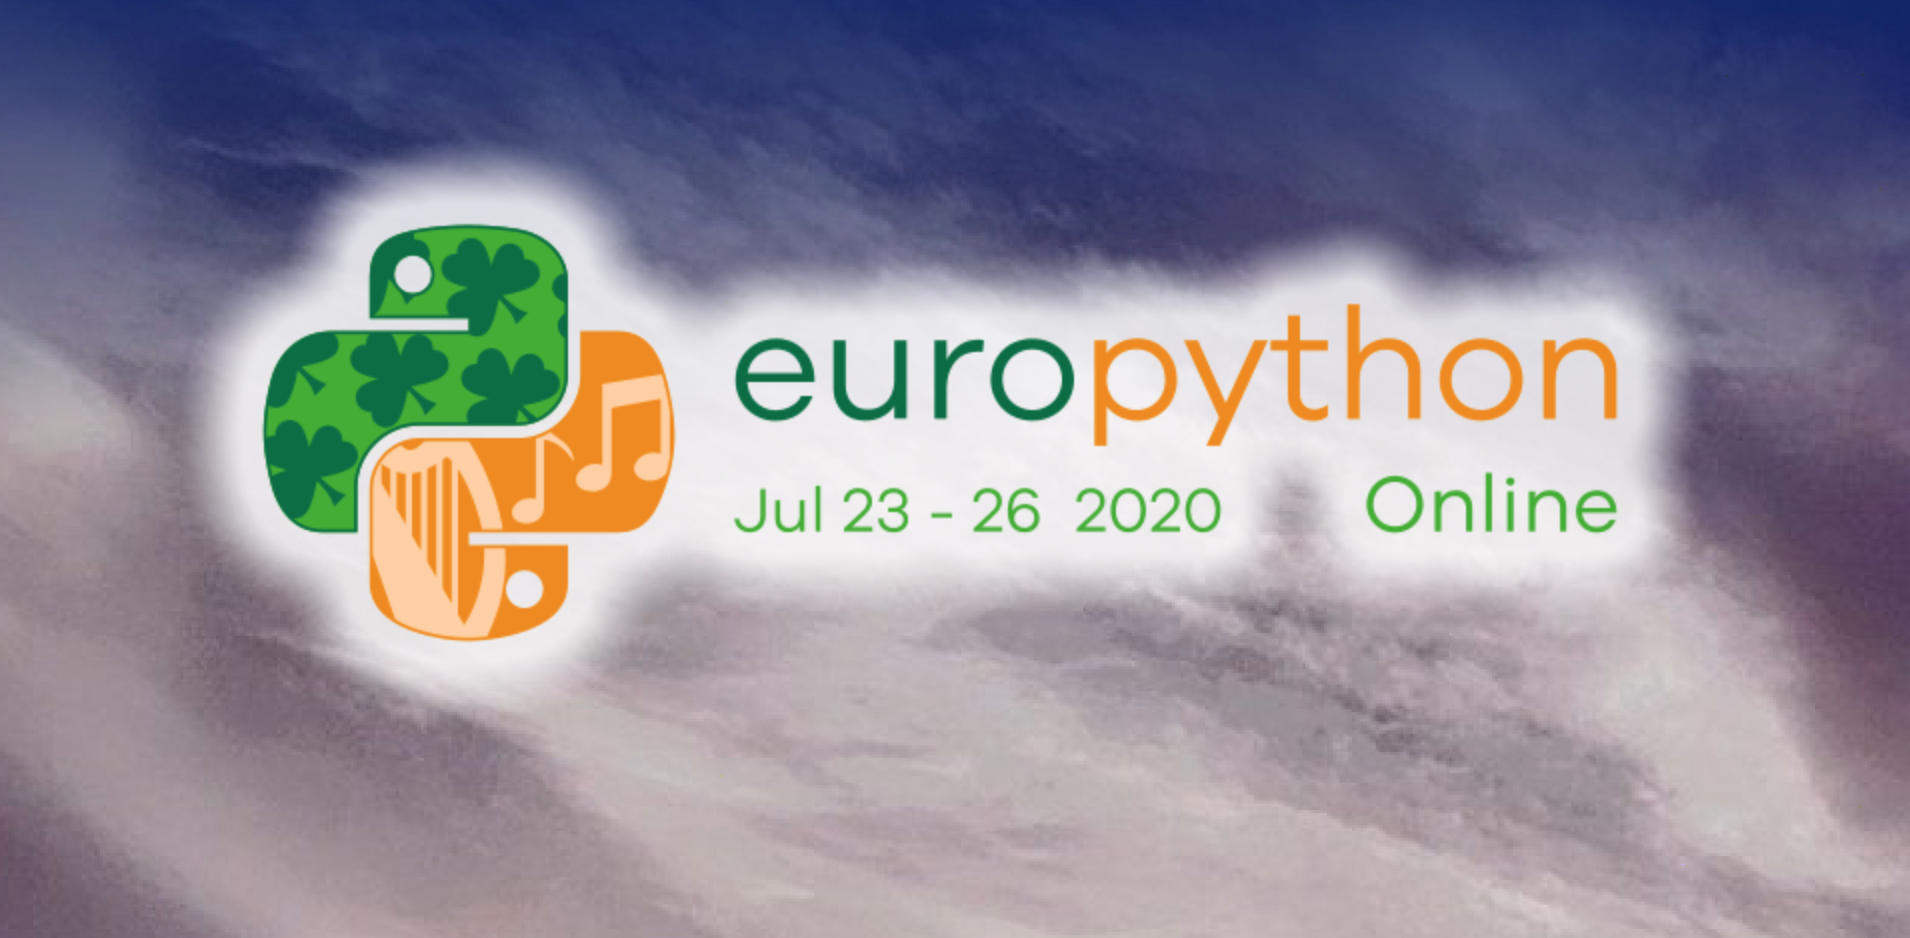 EuroPython Online is still EuroPython